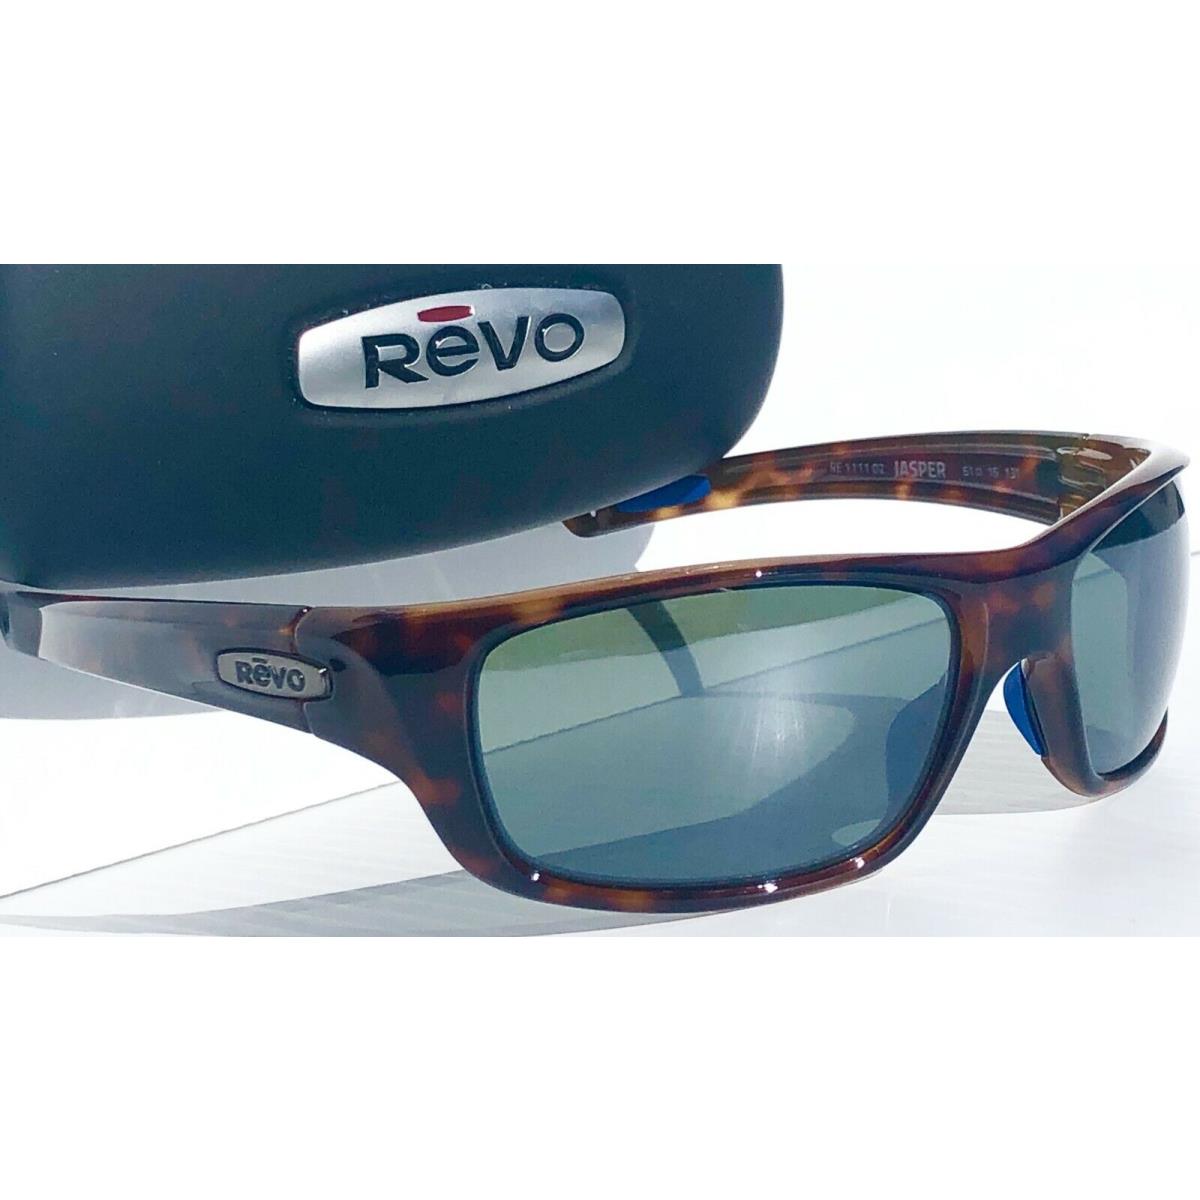 Revo sunglasses JASPER - Brown Frame, Green Lens